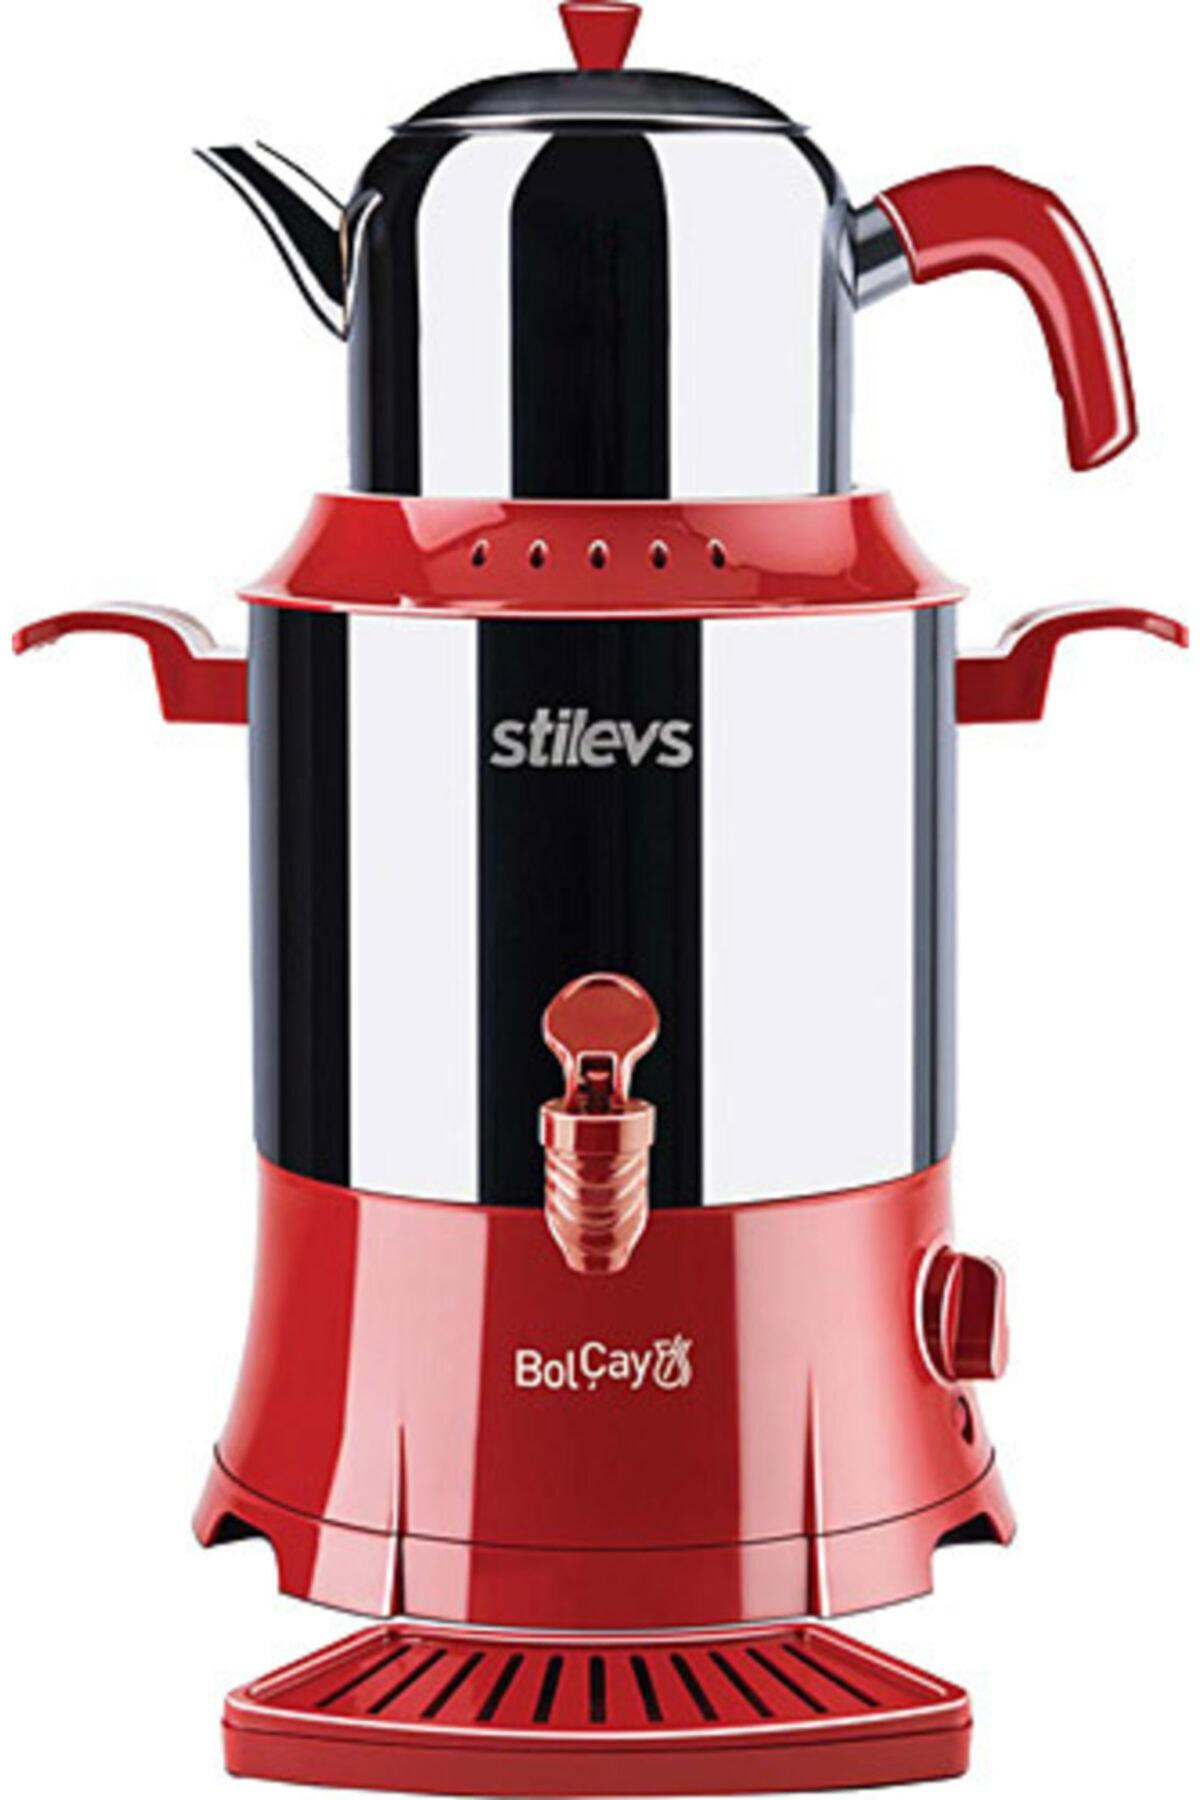 Stilevs Bolçay Otomatik Paslanmaz Çelik Demlikli 1250 W Işıklı Paslanmaz Çelik Inox Kırmızı Çay Makinesi